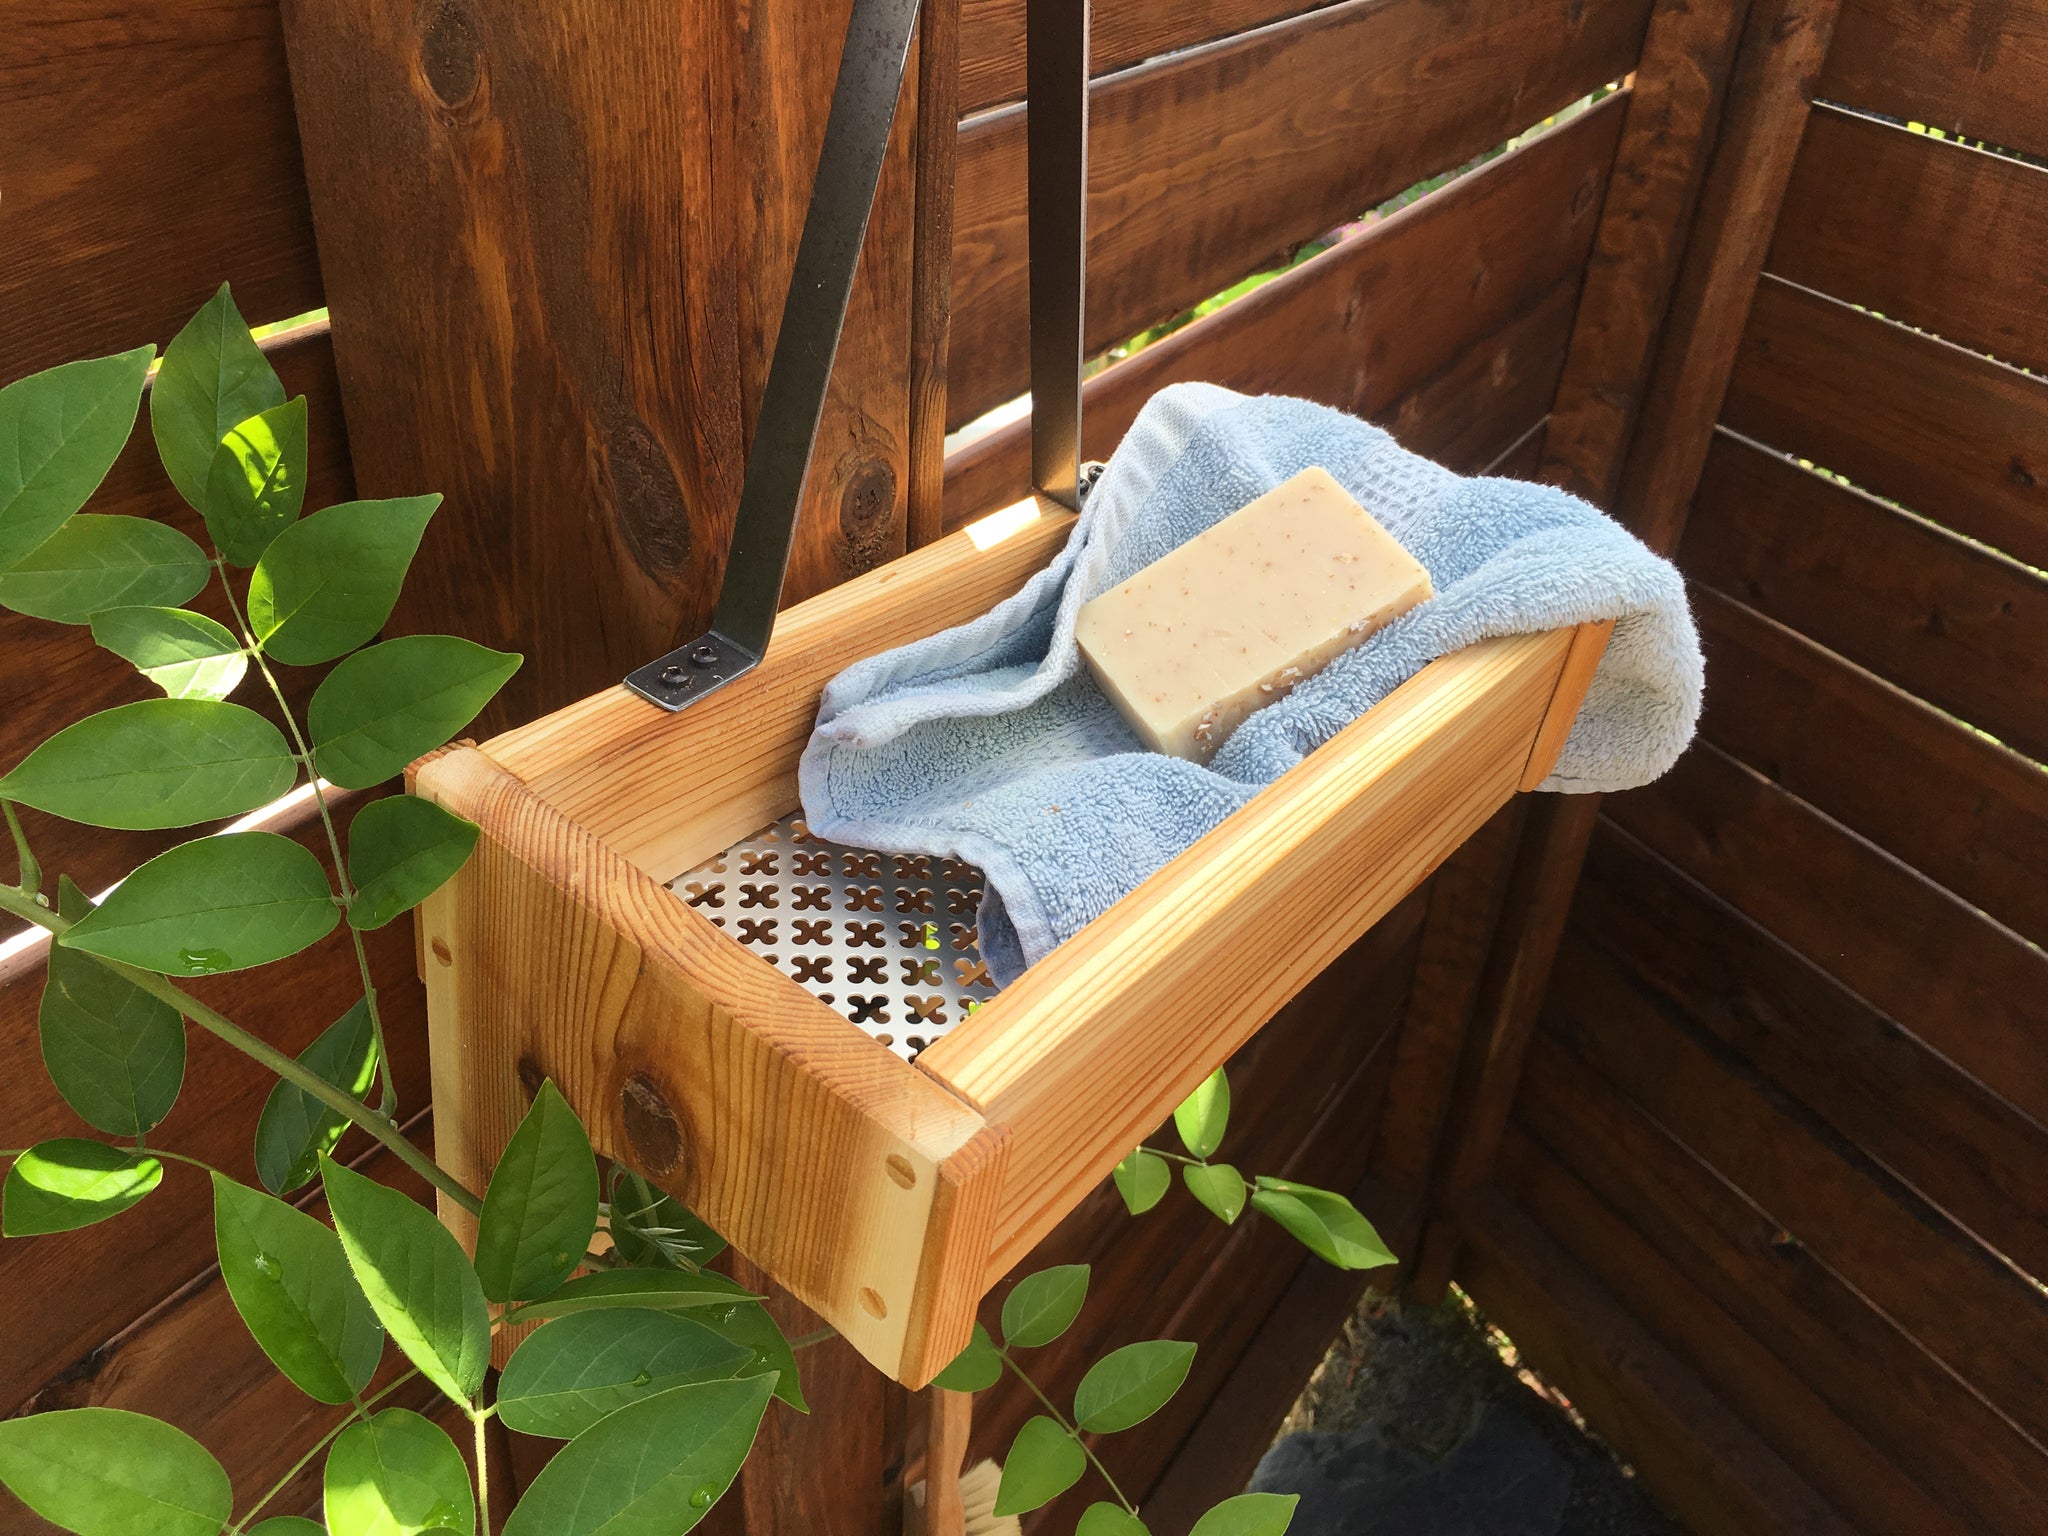 Simply Easy DIY: DIY Cedar Shower Caddie